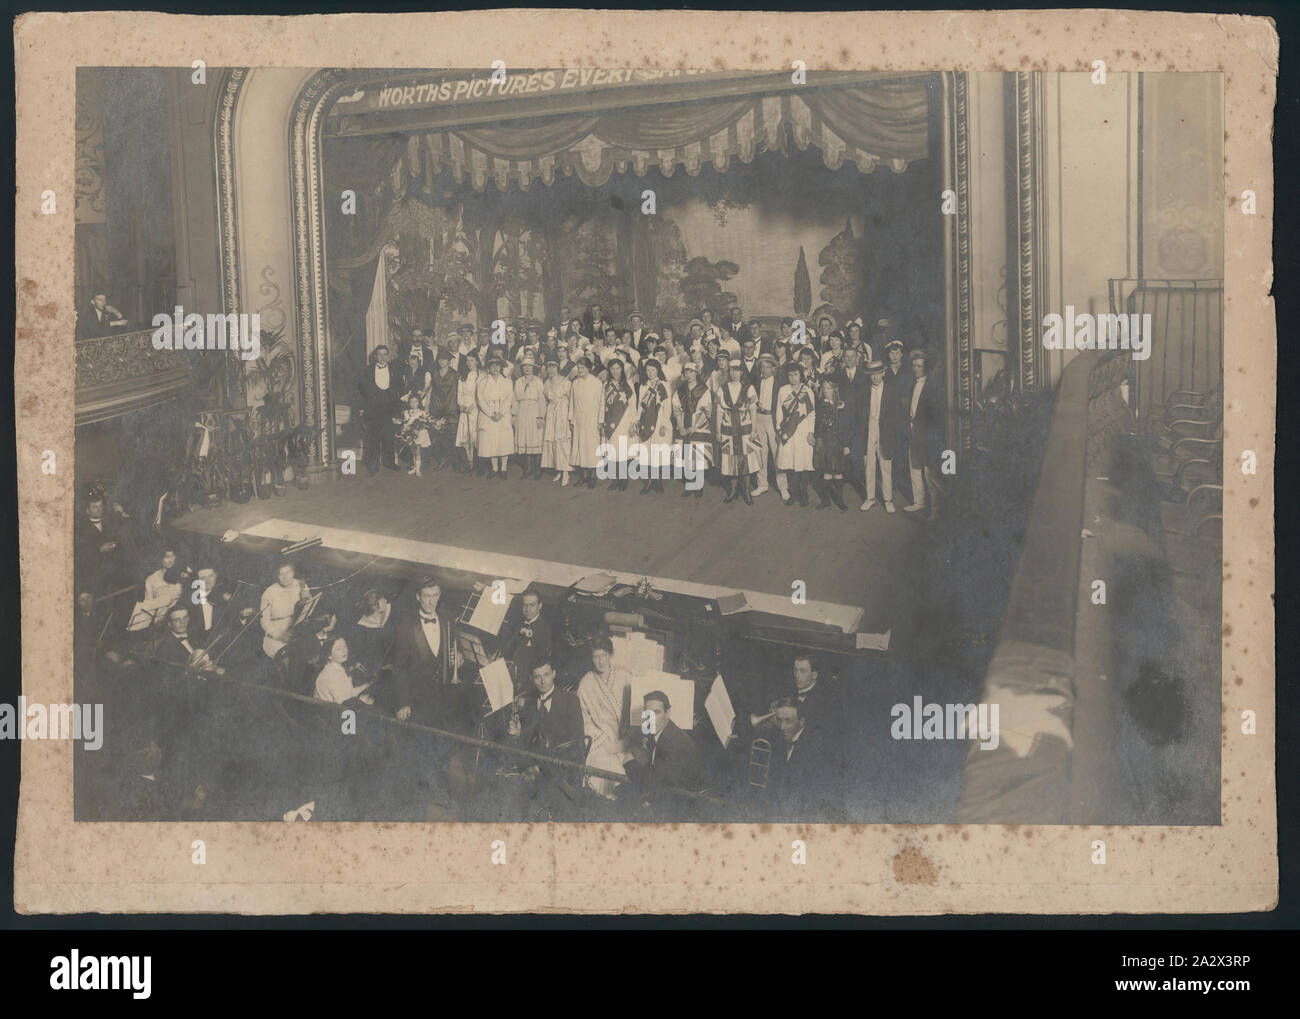 Photographie - Kodak Australasia Limited, Concert, vers 1910, photographie noir et blanc de la scène de concert et les artistes lors d'une manifestation organisée par Kodak Australasia Limited circa 1910 Banque D'Images